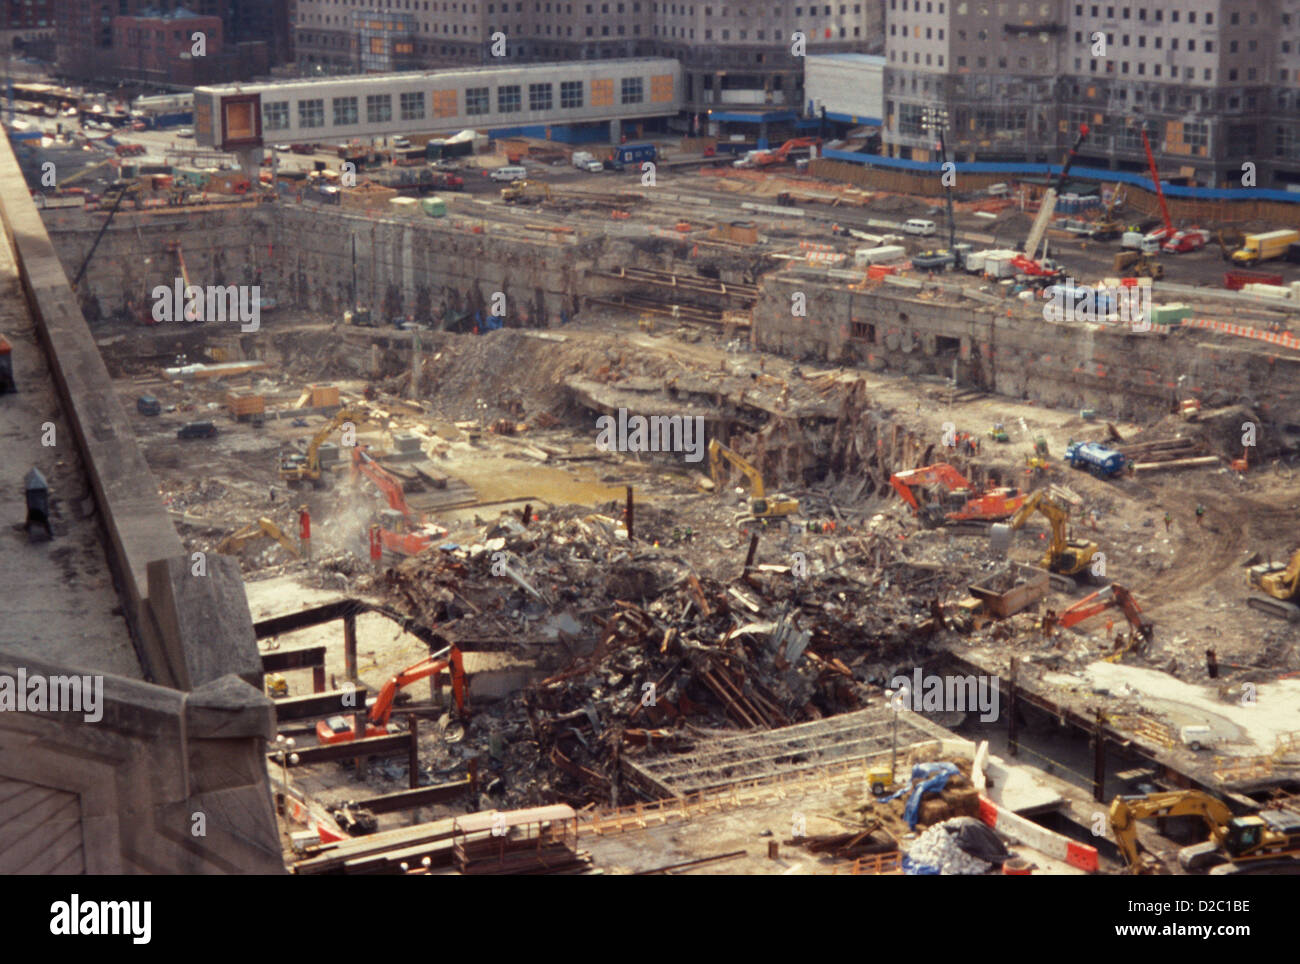 La ville de New York. Publiez 9/11/01 World Trade Center reste, Ground Zero. Effort de récupération. Banque D'Images